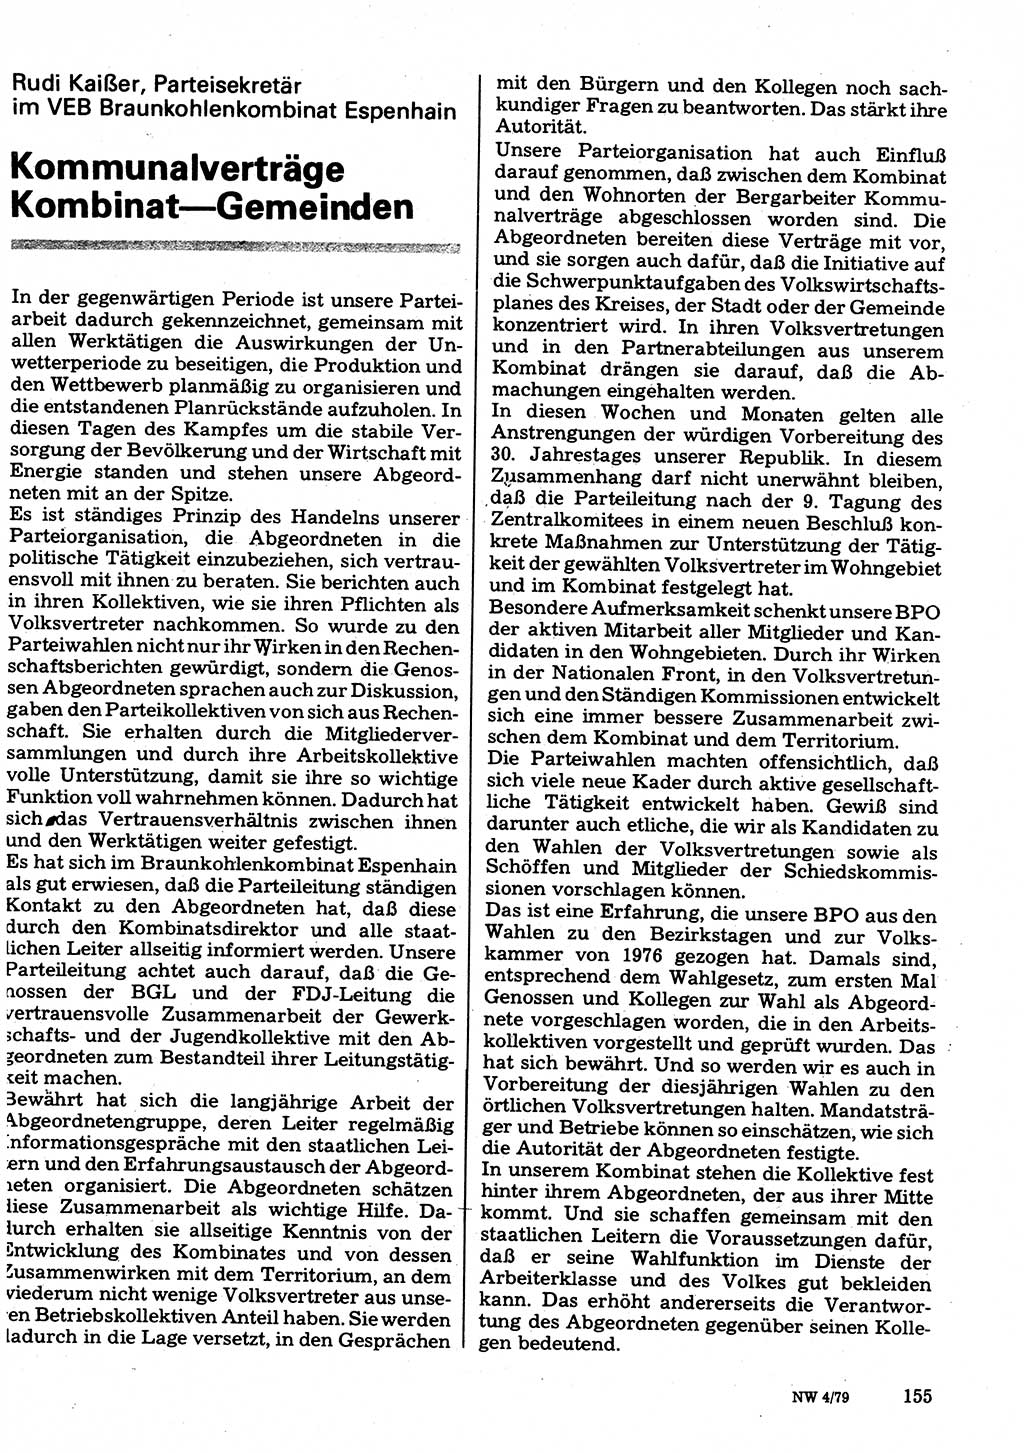 Neuer Weg (NW), Organ des Zentralkomitees (ZK) der SED (Sozialistische Einheitspartei Deutschlands) für Fragen des Parteilebens, 34. Jahrgang [Deutsche Demokratische Republik (DDR)] 1979, Seite 155 (NW ZK SED DDR 1979, S. 155)